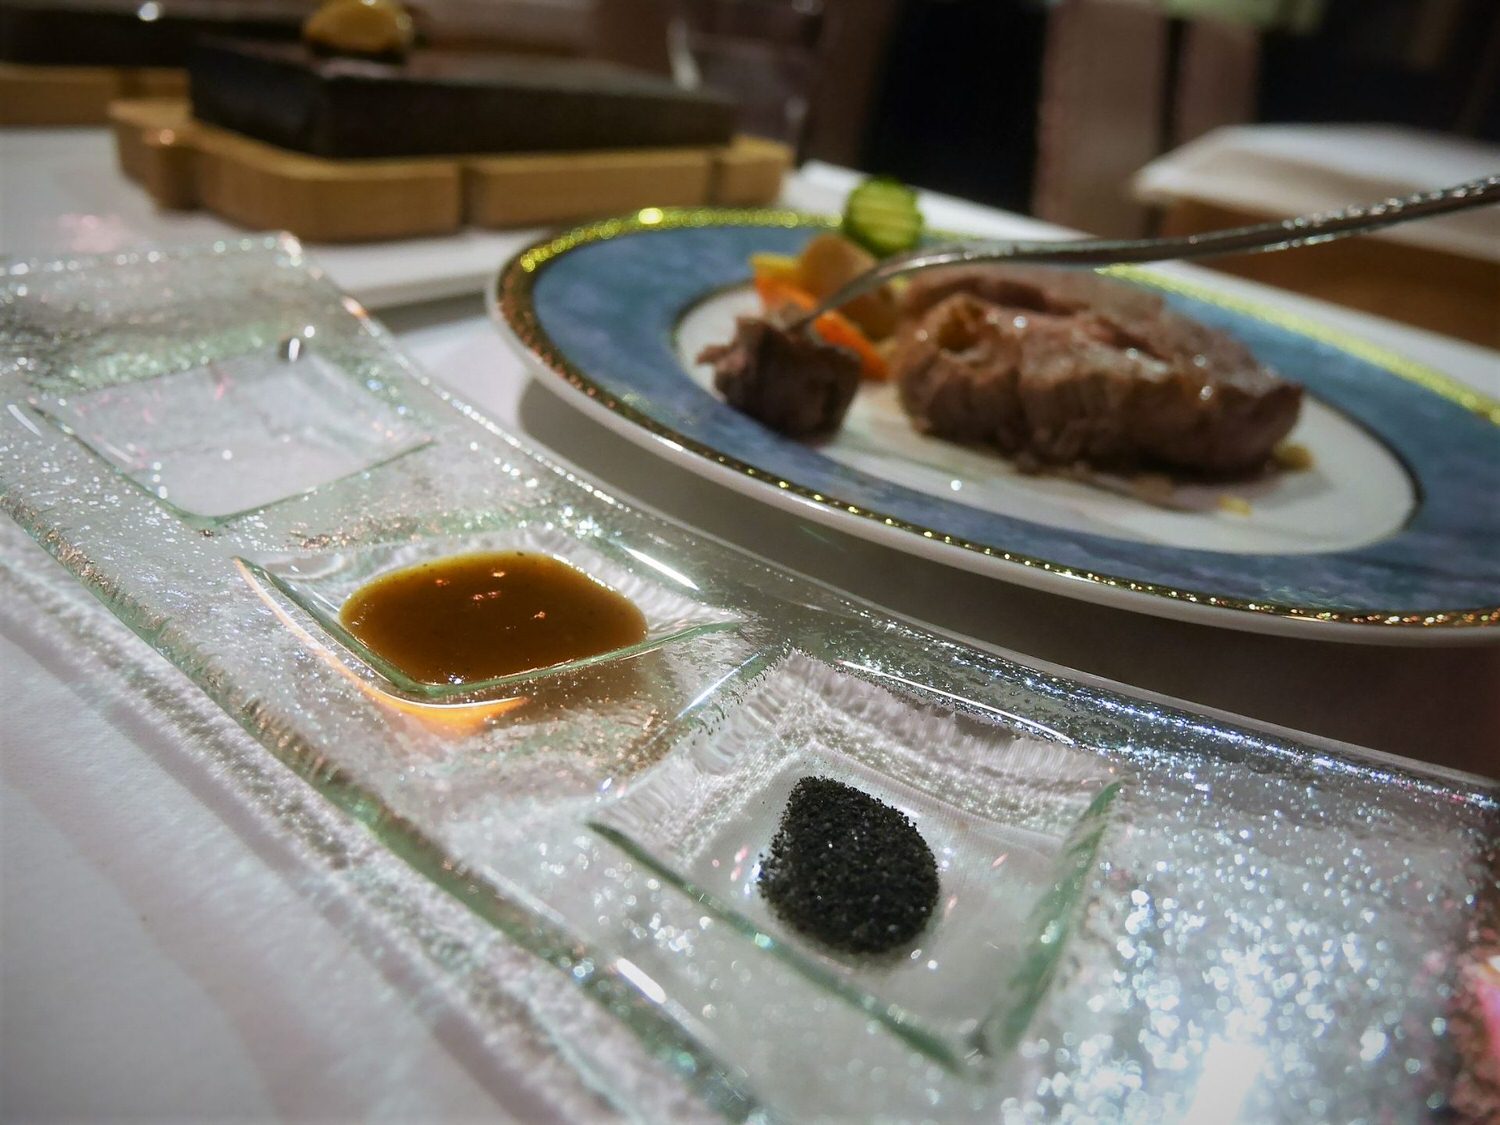 【食記】高雄市苓雅區|覓奇頂級料理餐廳 Miche House 驚喜美味的創意料理